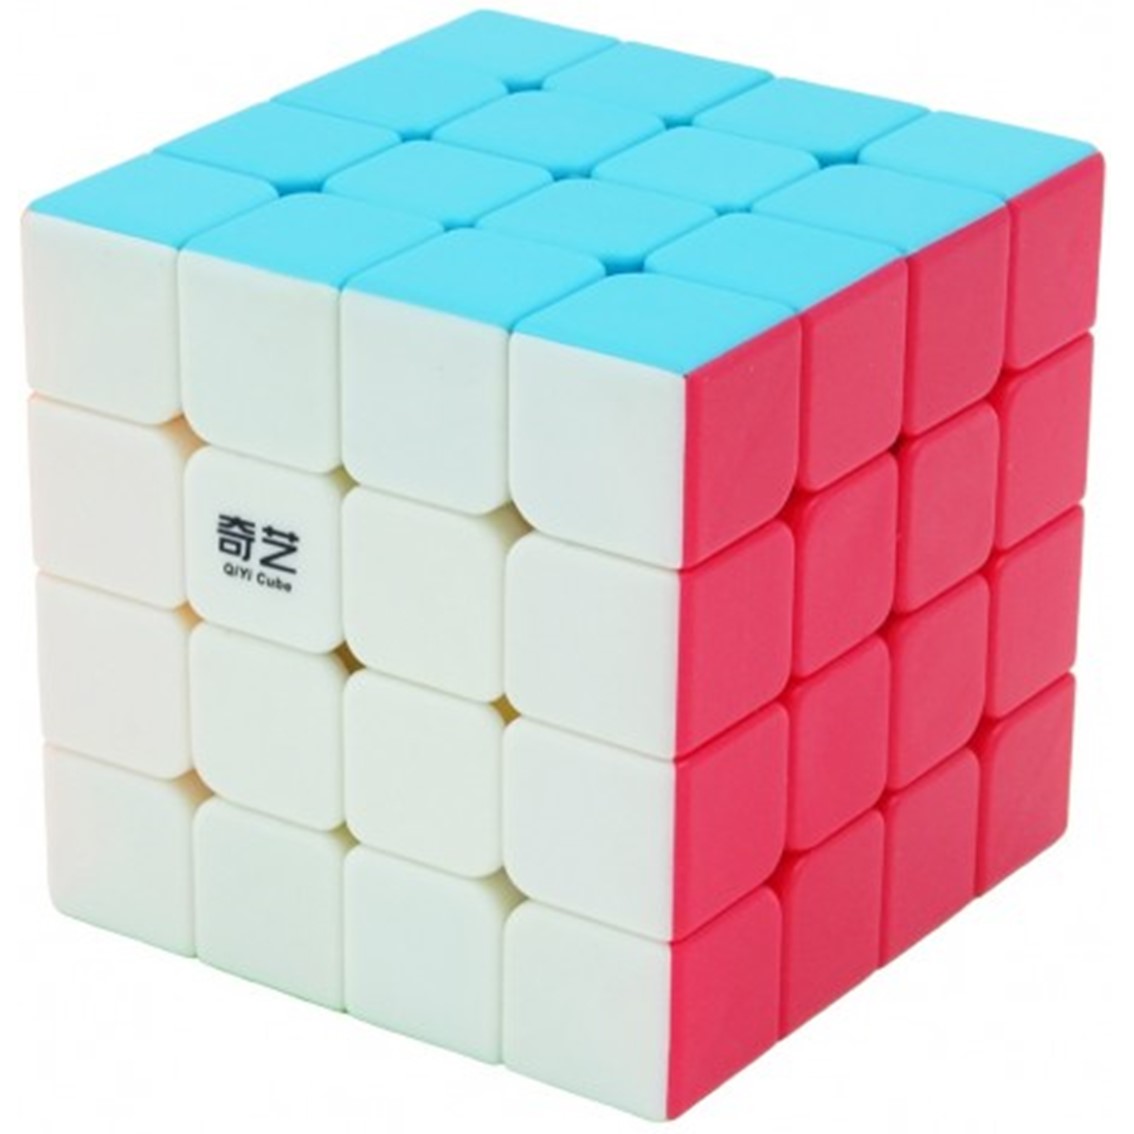 4x4 Cubo De Rubik Cubo rubik qiyi qiyuan w 4x4